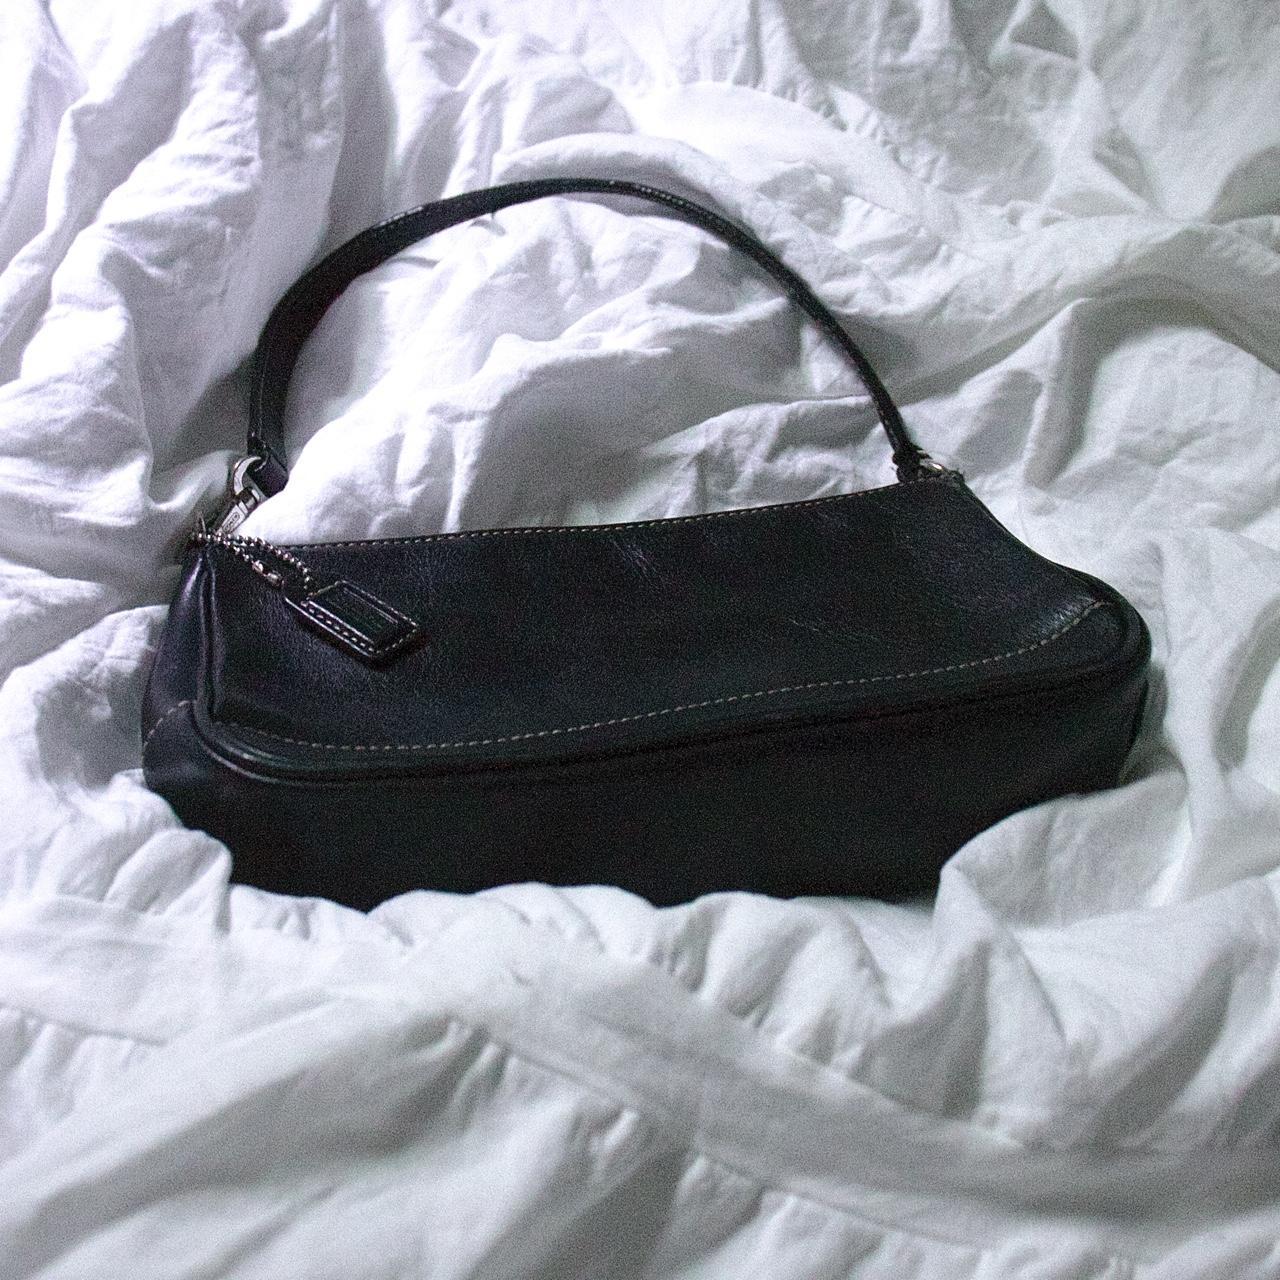 Authentic Vintage Coach Shoulder Bag 👛 Rare ✨ No - Depop